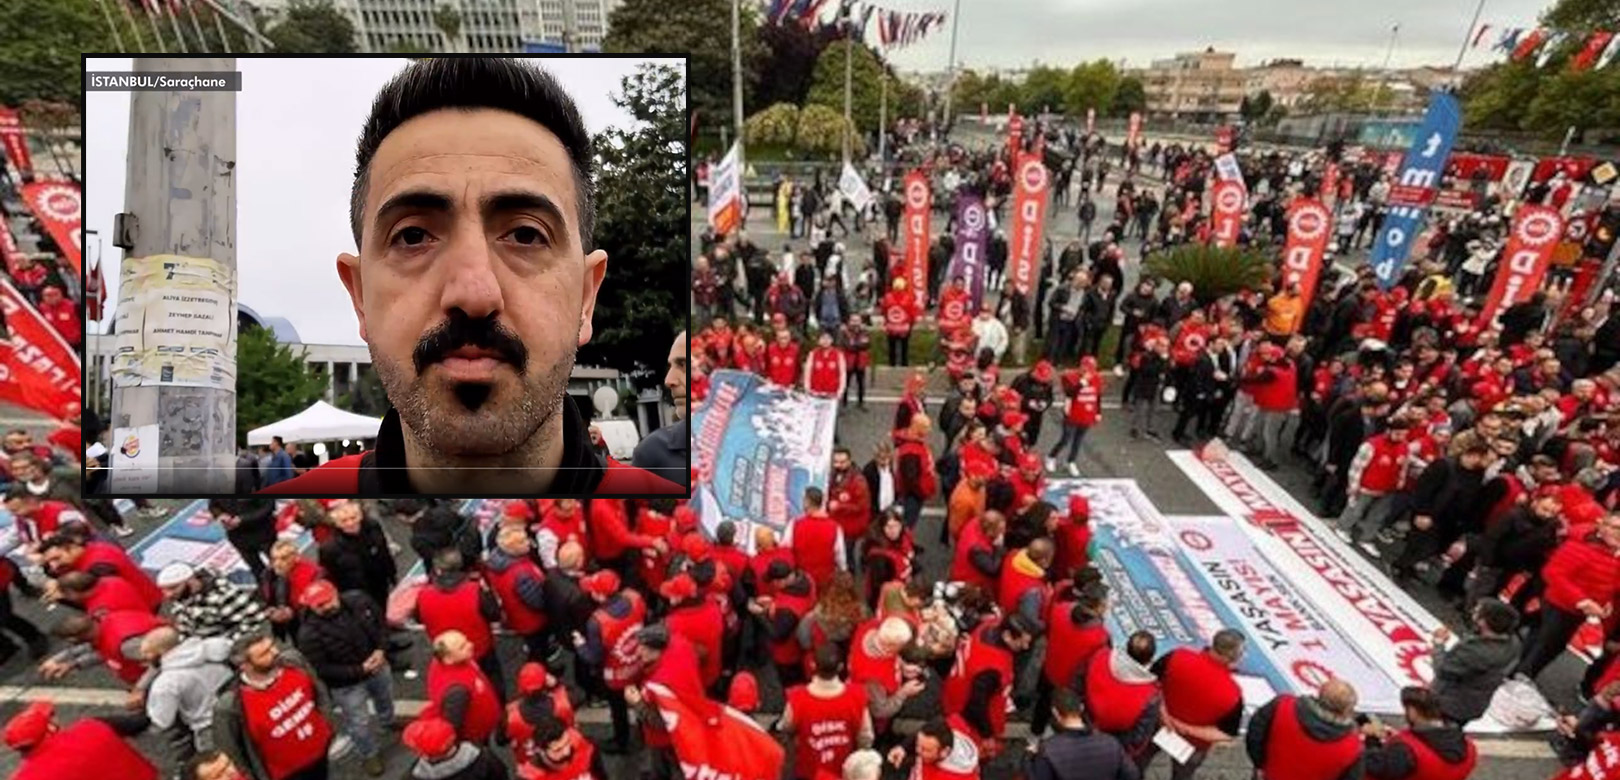 DİSK Taksim'e yürümekten vazgeçti; işçiler isyan etti: 'İnsanları küstürüp üzüyorsunuz'